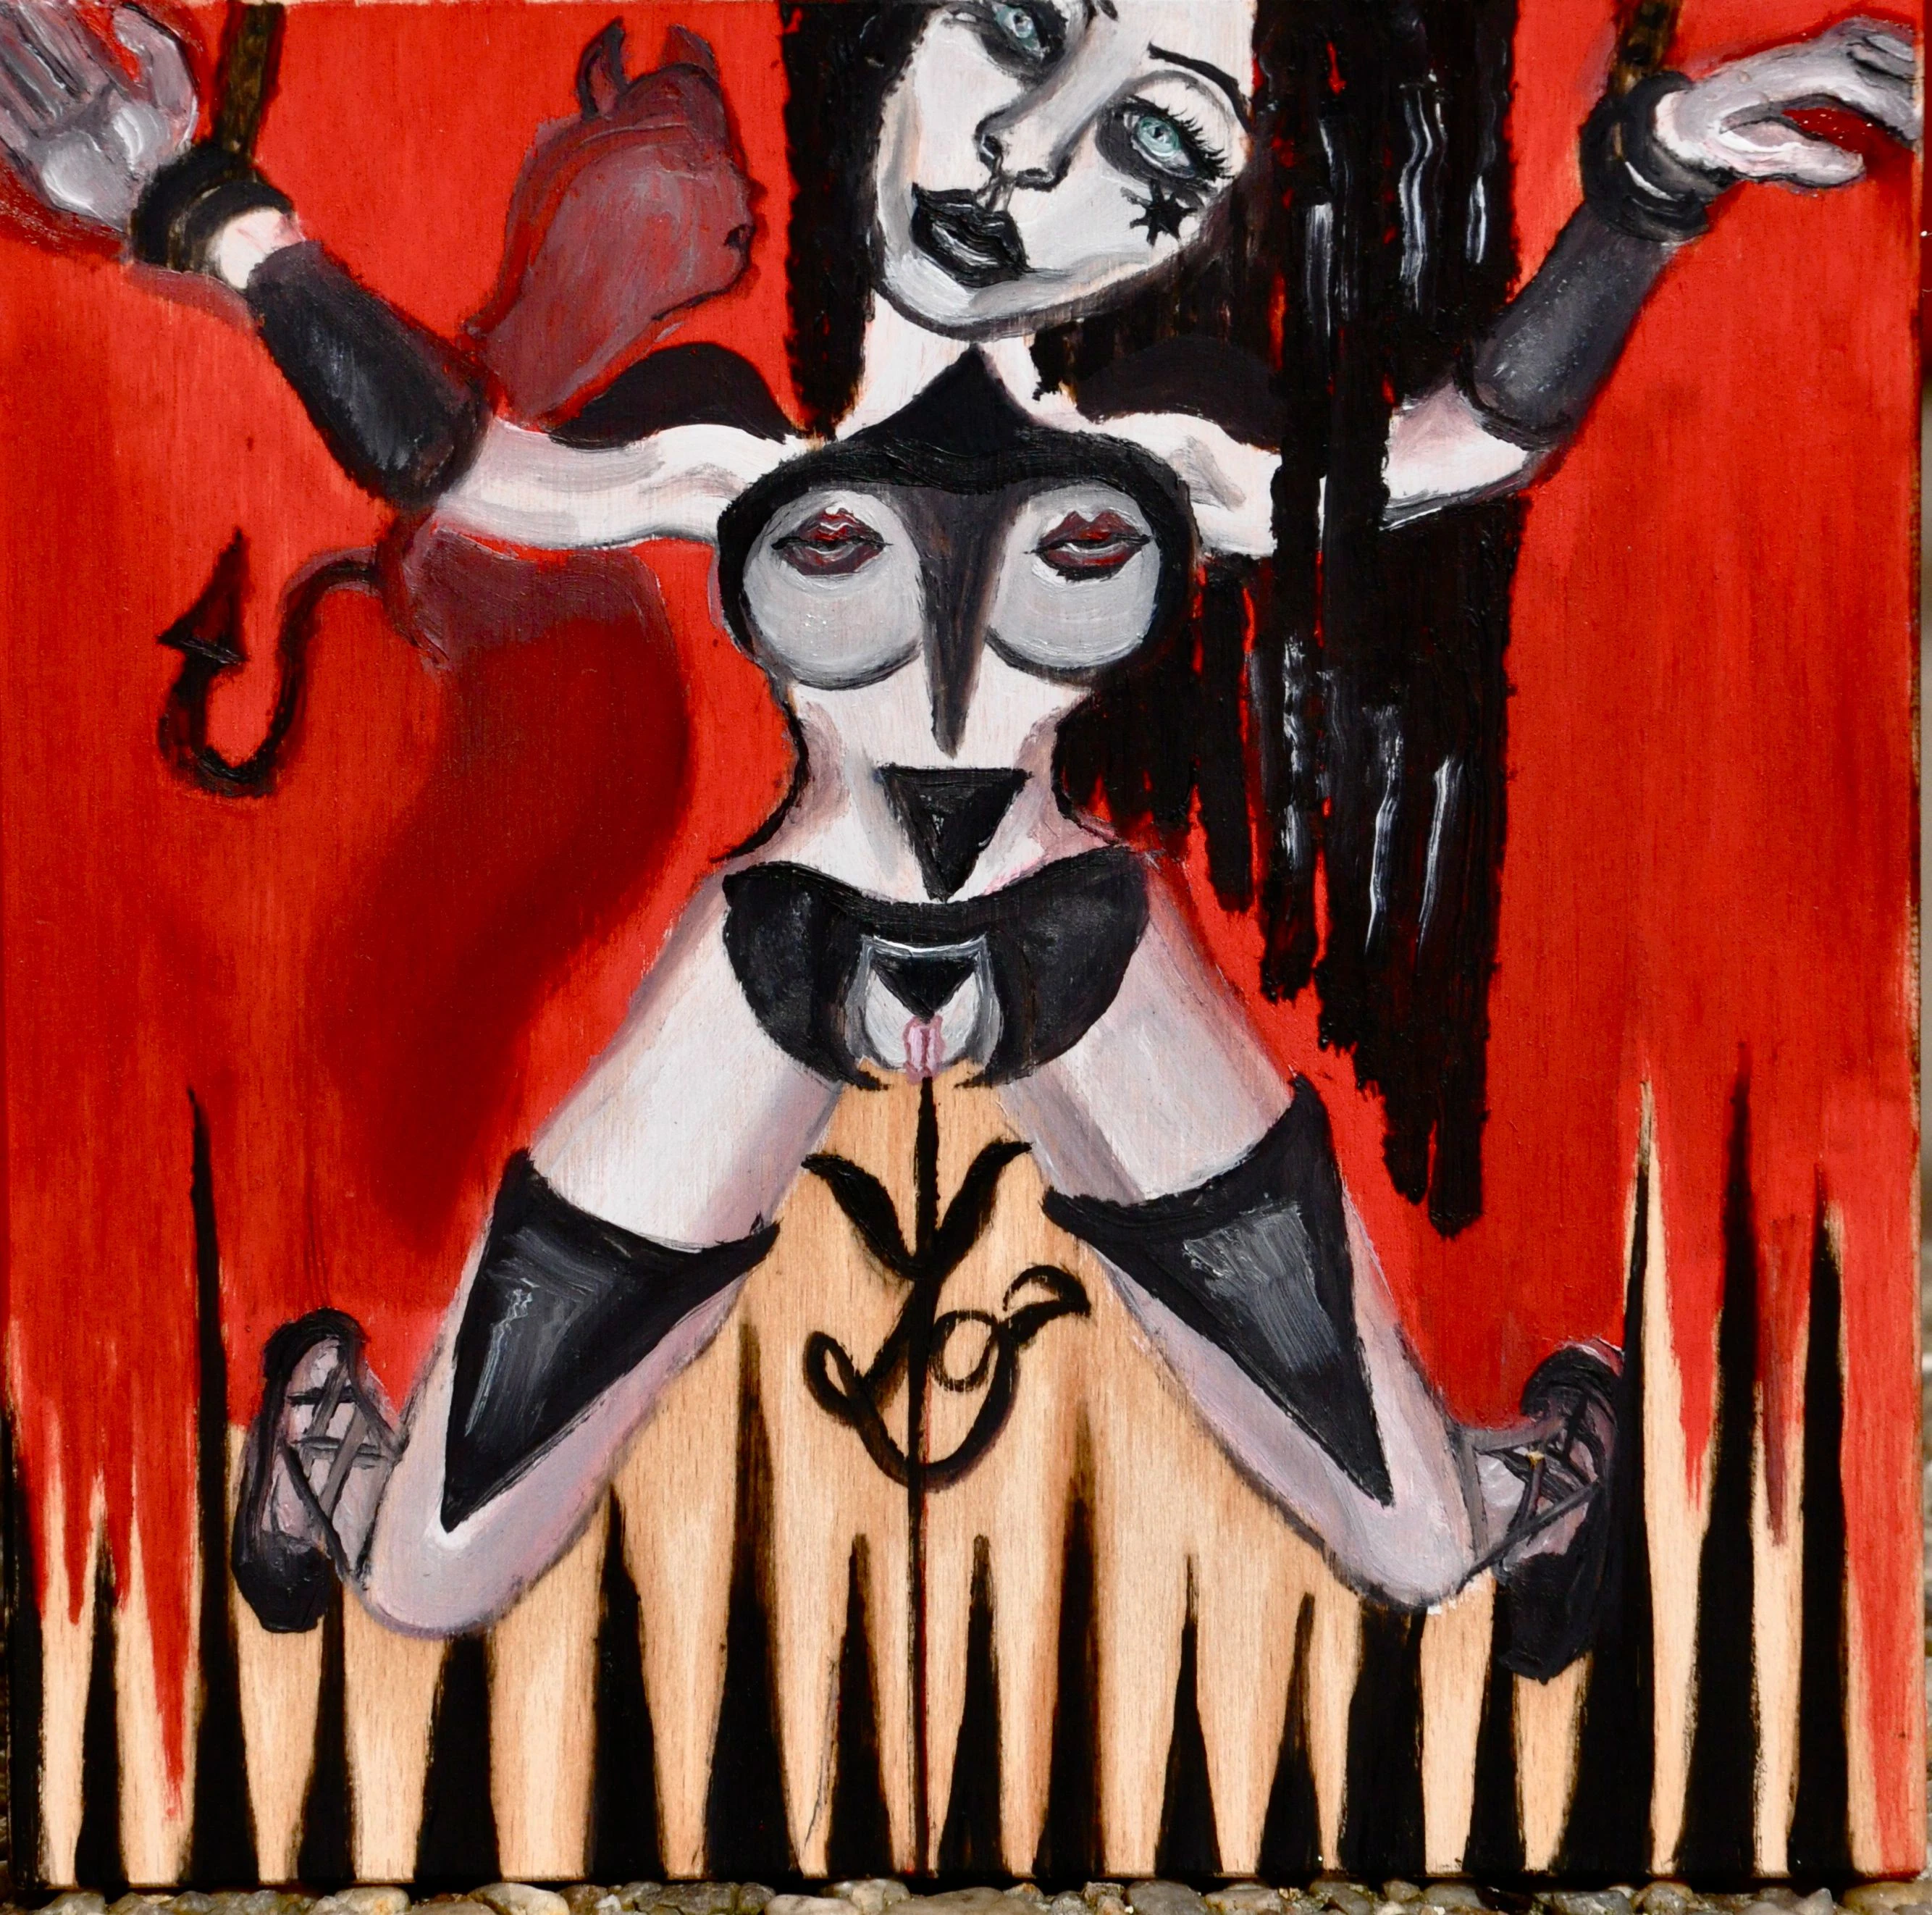 "I listen my devil"   Oil on wood 2013